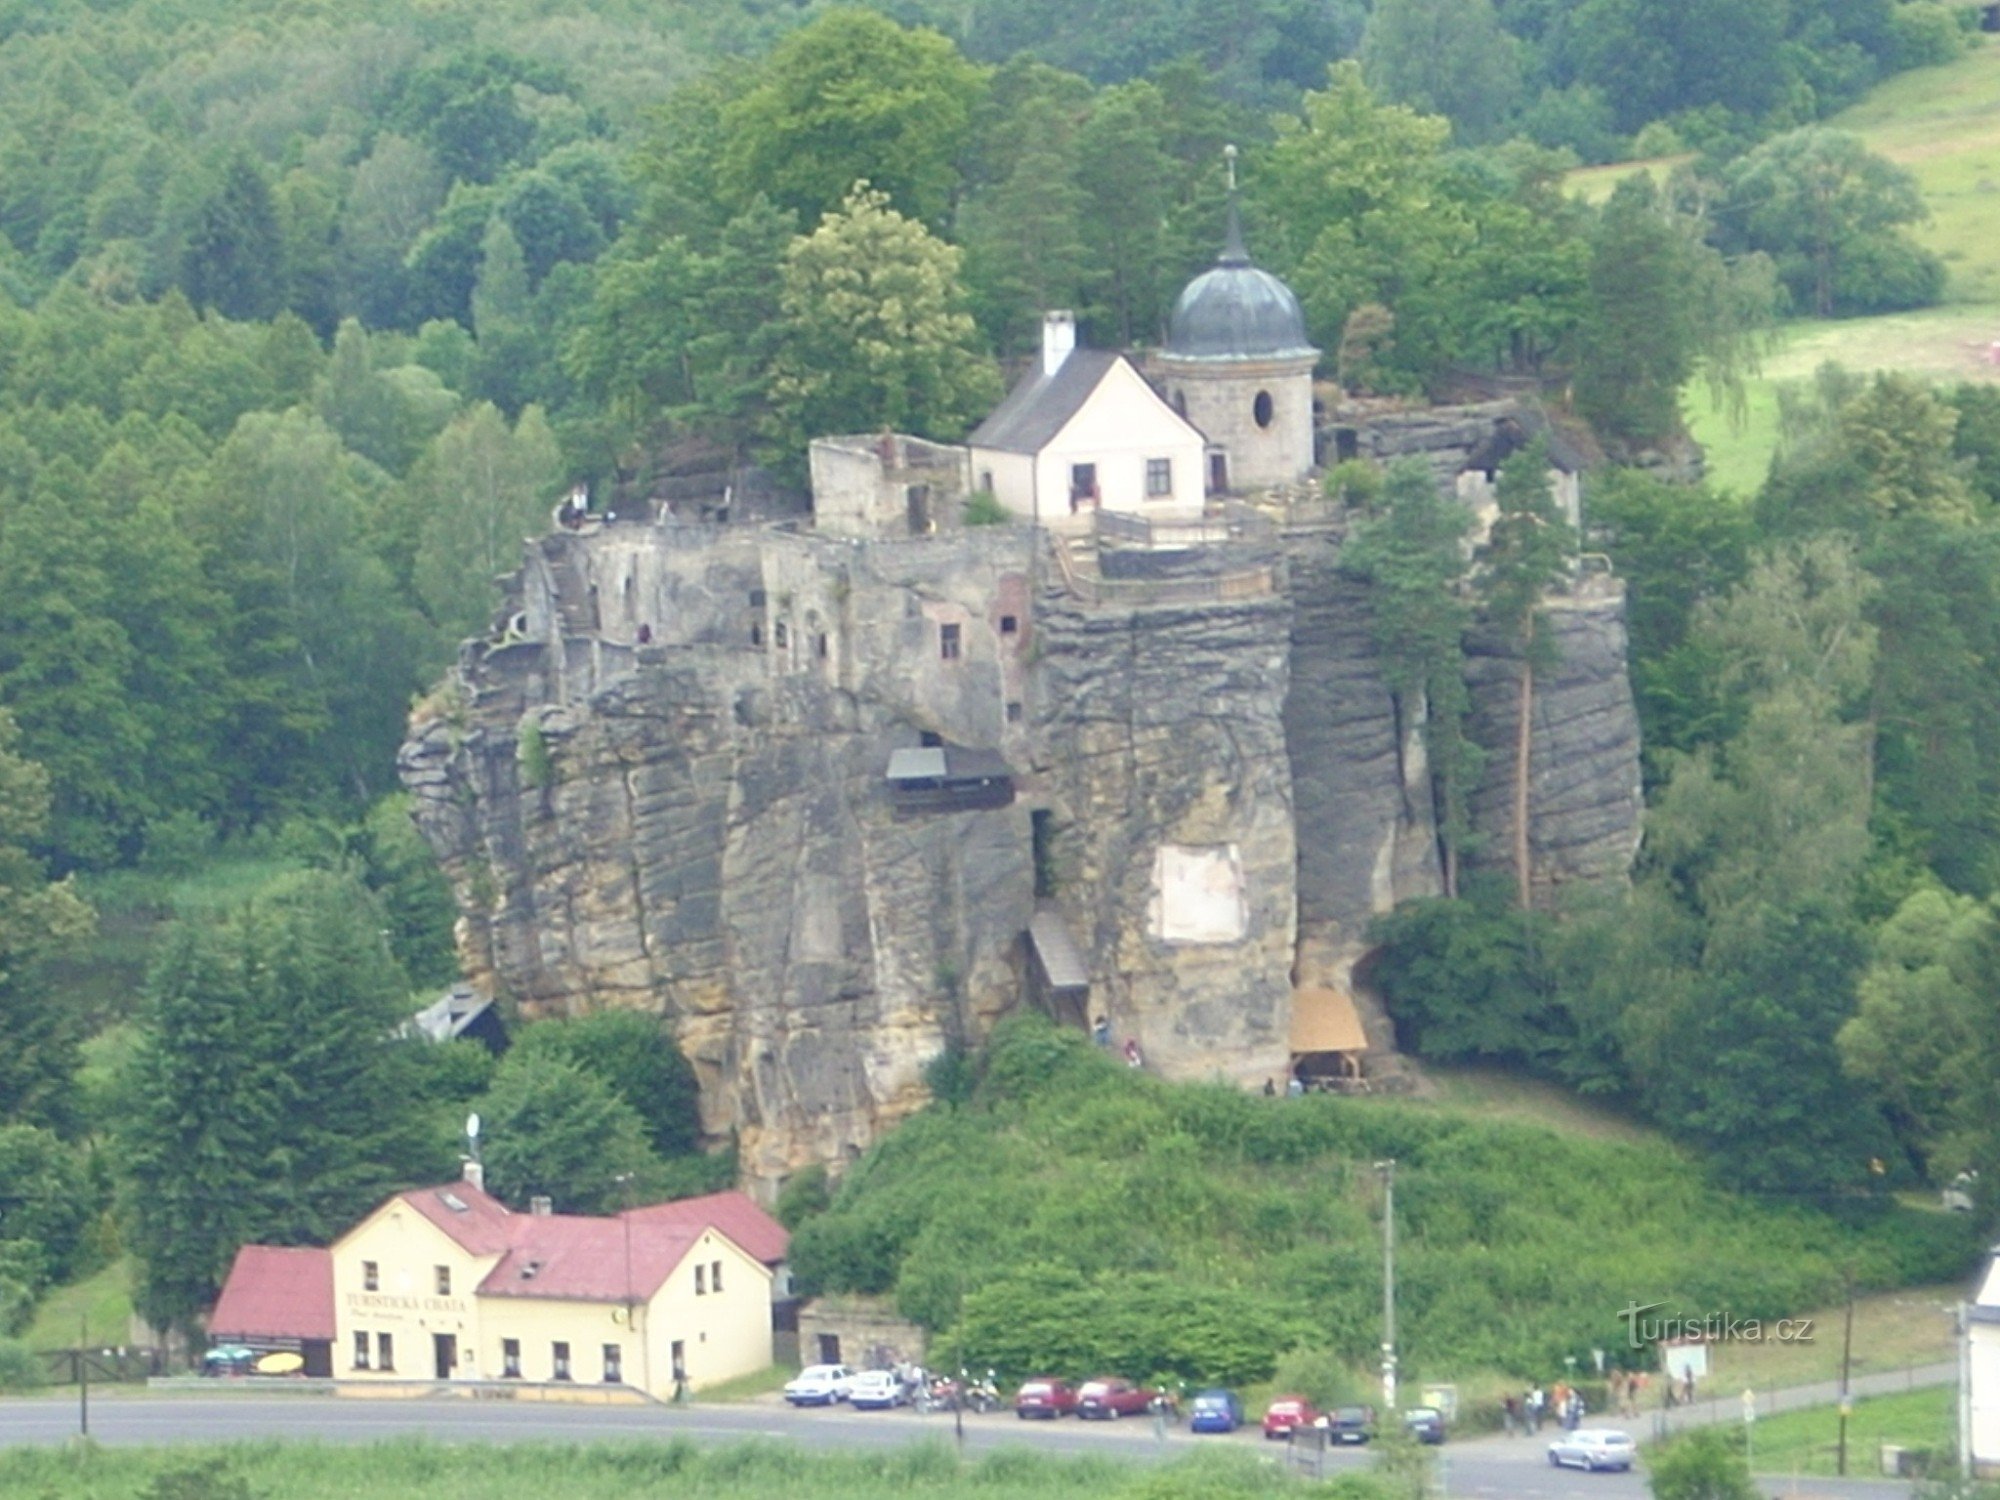 Hang động của Samuel gần Sloup ở Bohemia